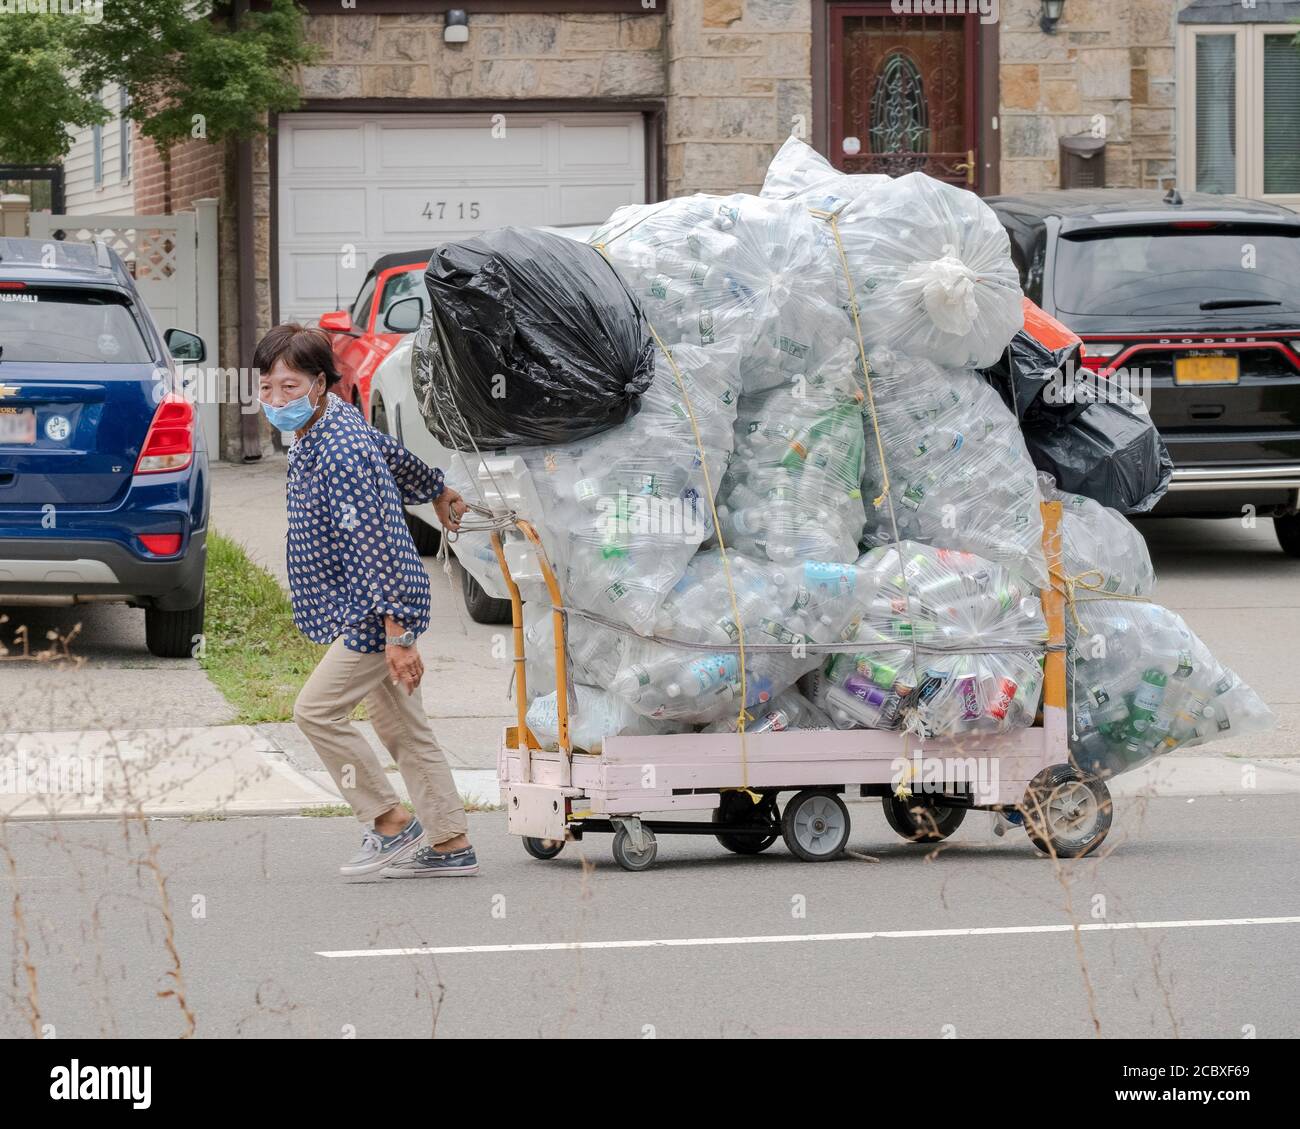 Una donna asiatica americana, probabilmente cinese, trascina un enorme carico di bottiglie di deposito su un carrello con ruote. Il 162nd St. A Flushing, Queens, New York City. Foto Stock